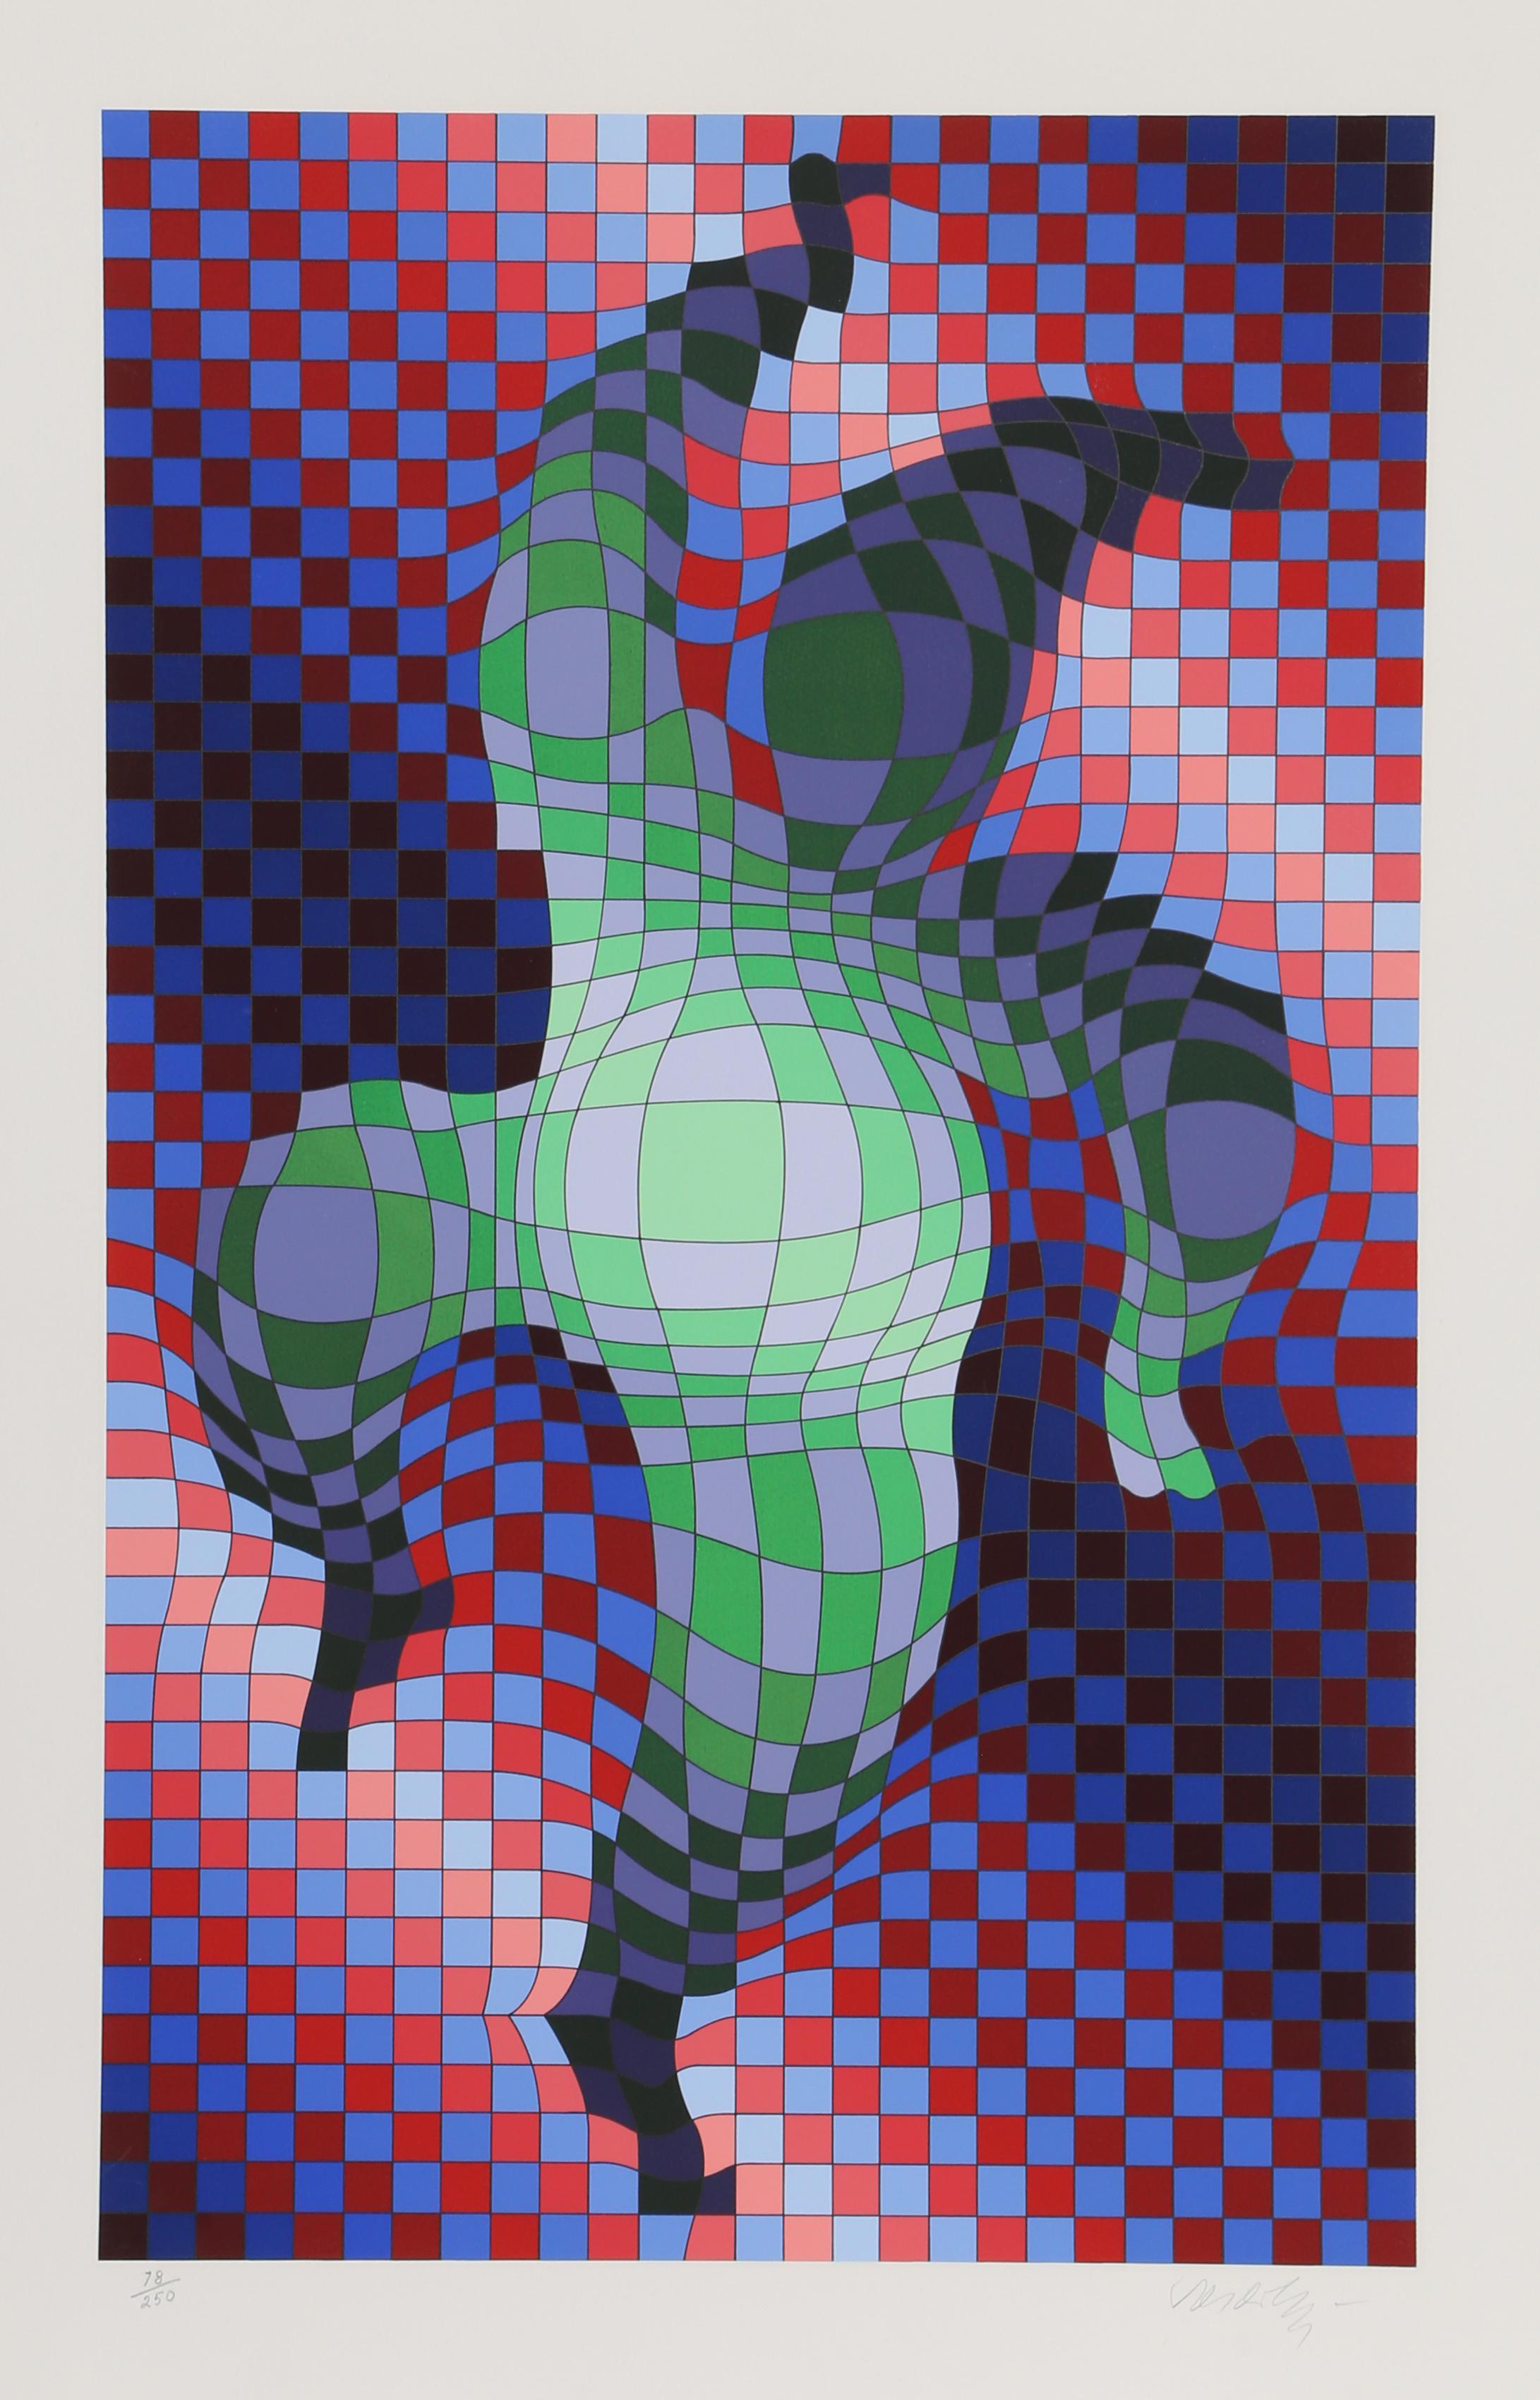 Harlekin von Victor Vasarely, Ungar (1908-1997)
Datum: ca. 1980
Siebdruck, signiert und nummeriert mit Bleistift
Auflage von 78/250
Bildgröße: 25,75 x 16 Zoll
Größe: 30,5 x 19,75 Zoll (77,47 x 50,17 cm)